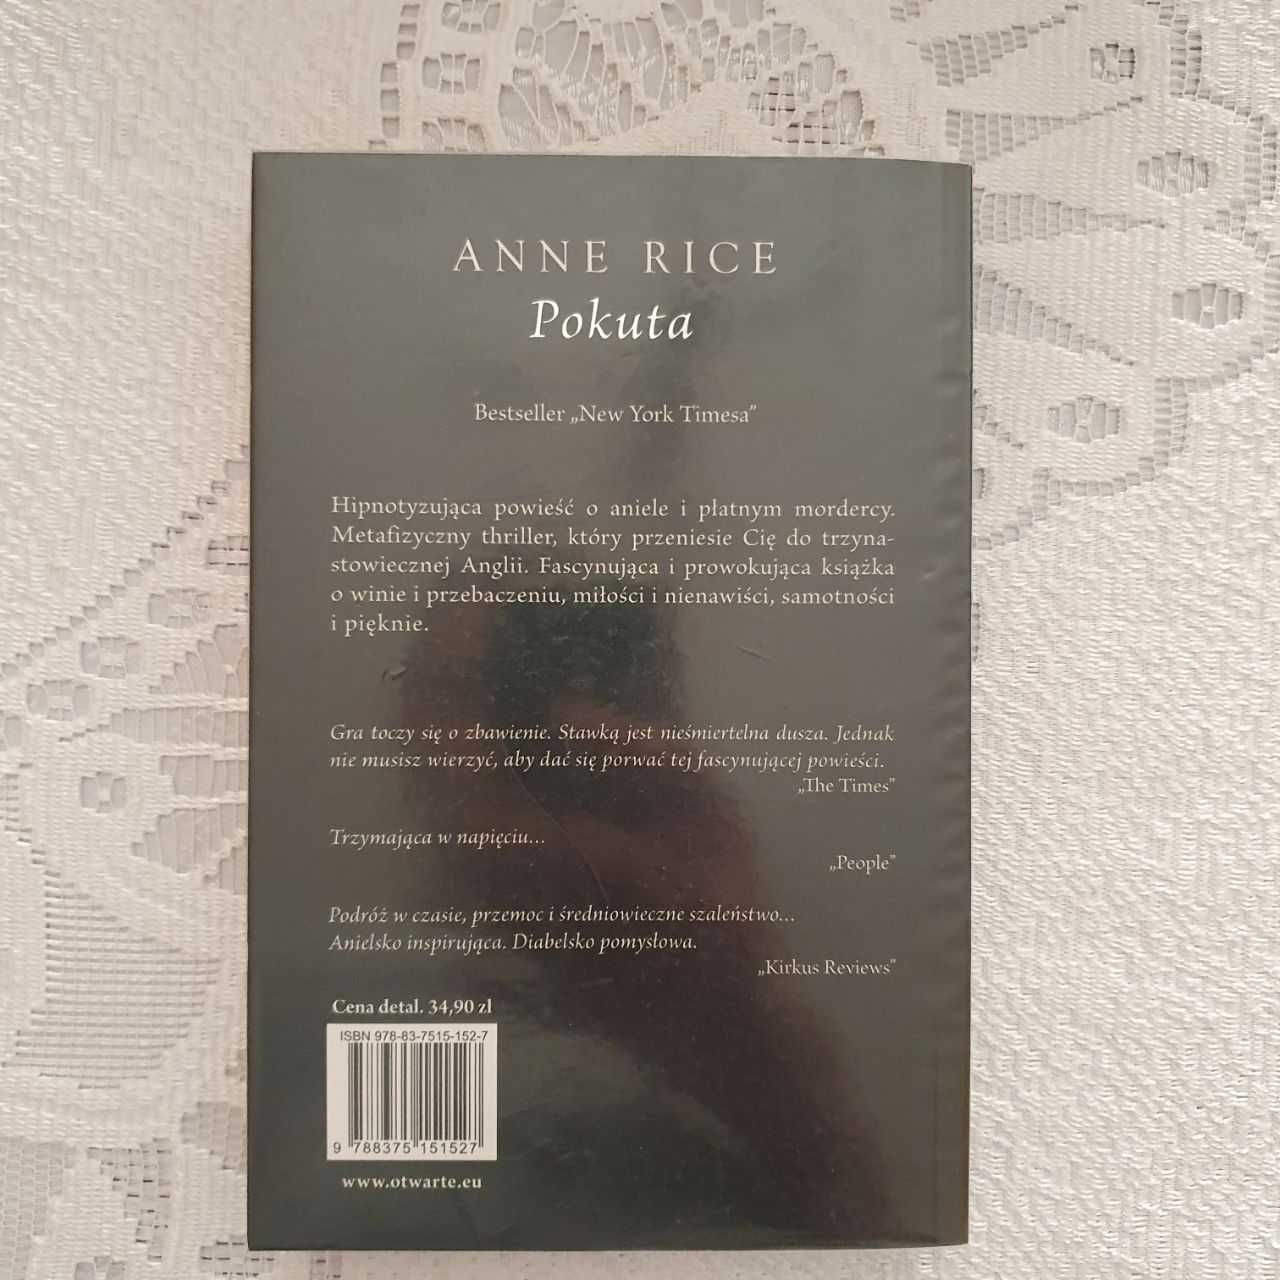 Sprzedam książkę Pokuta (Anne Rice)